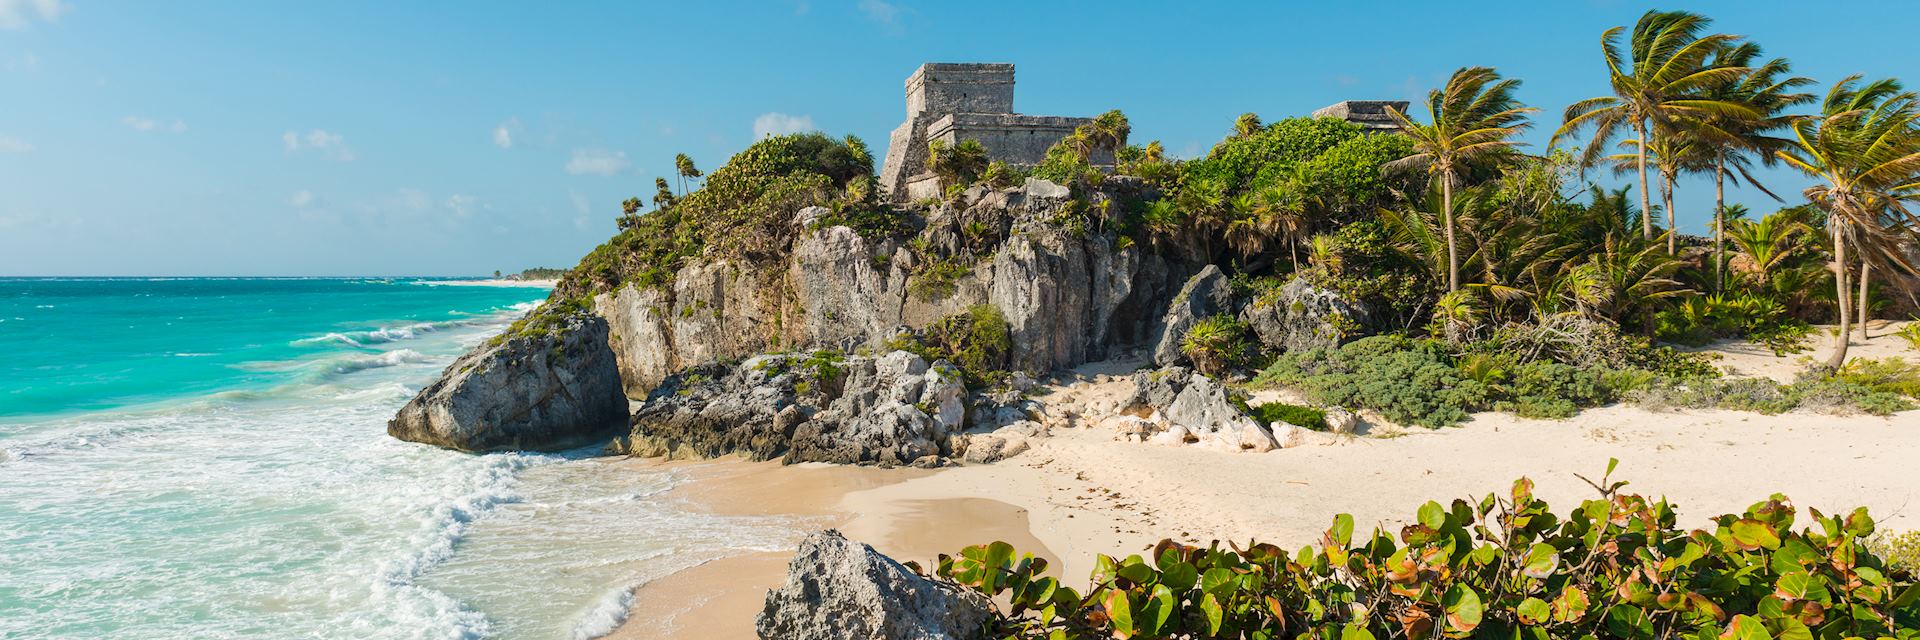 Tulum beach on the Mayan Riviera